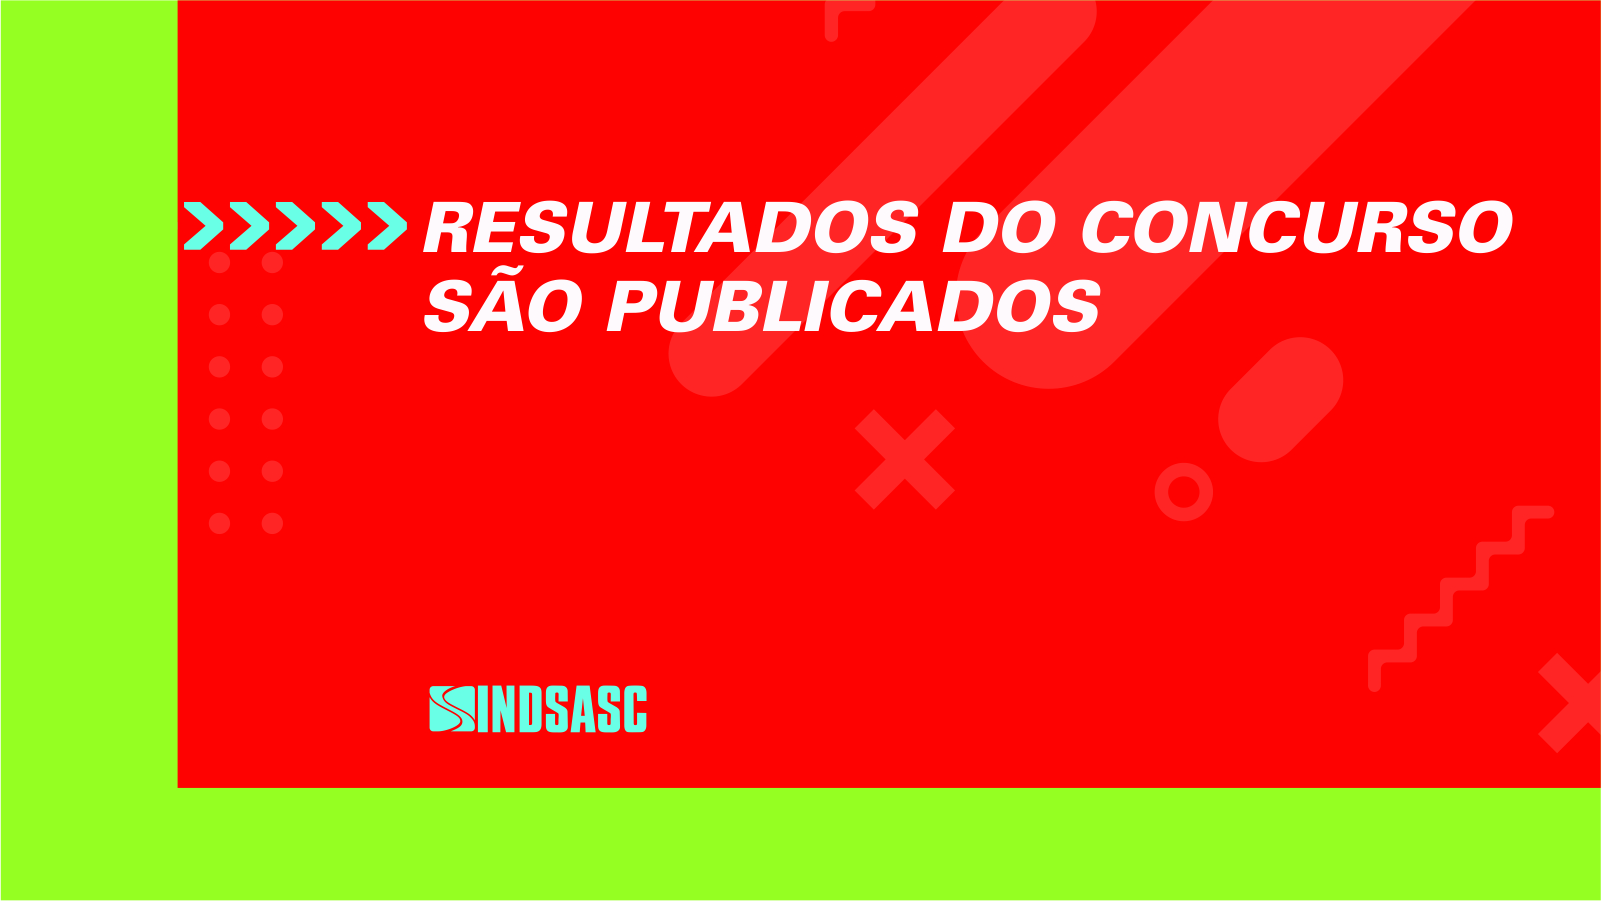 RESULTADOS DO CONCURSO SÃO PUBLICADOS